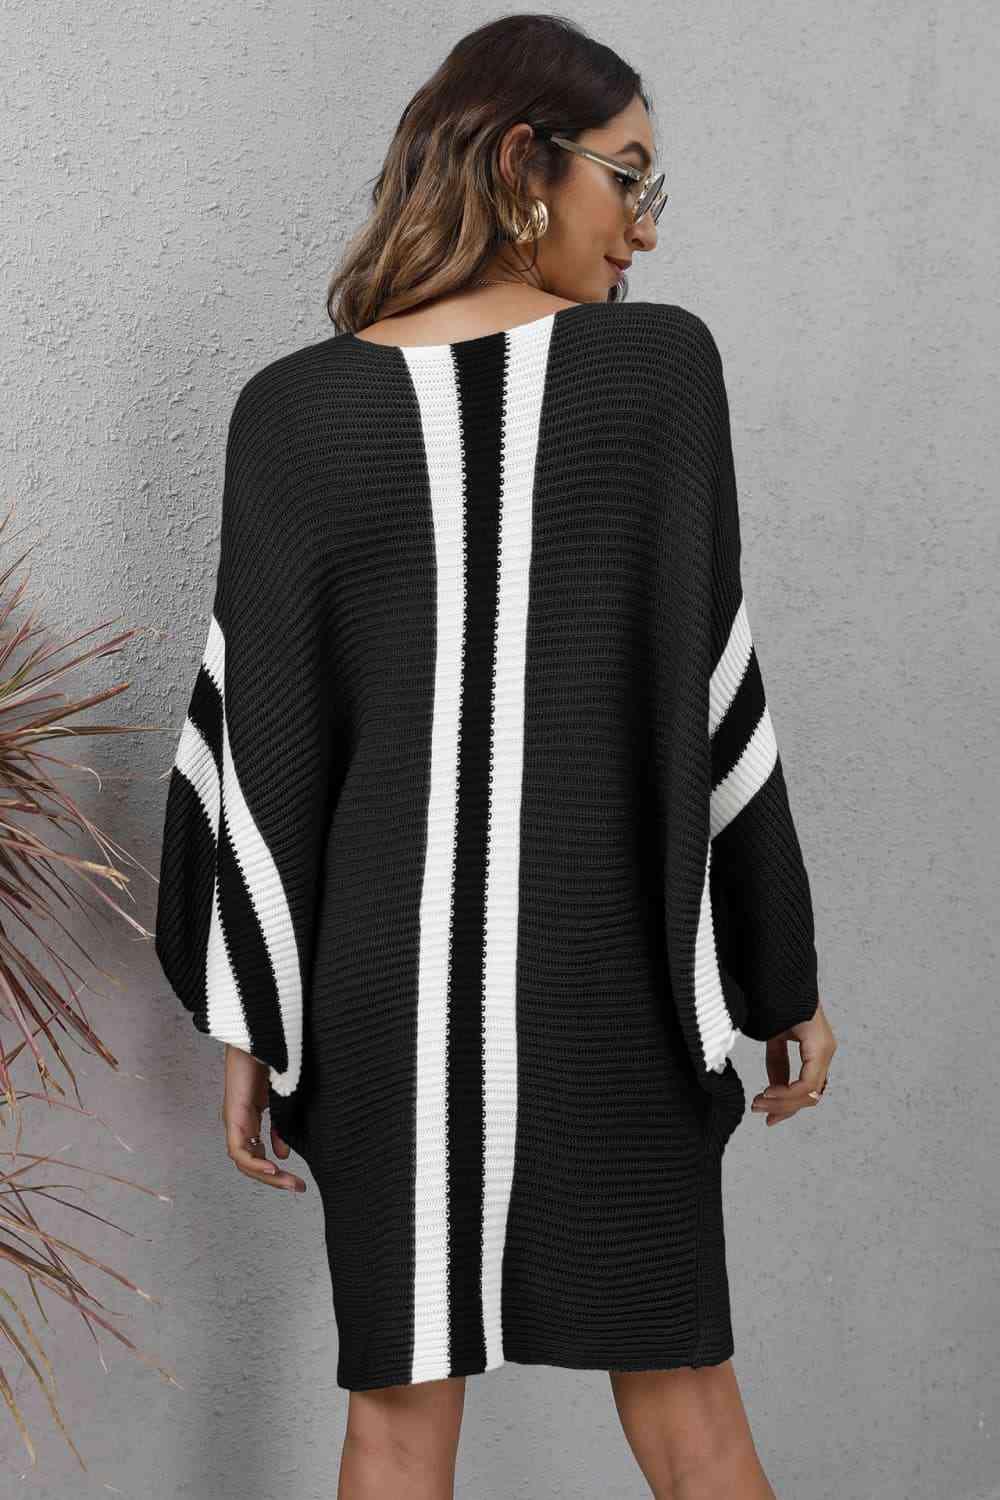 Stylishly Warm Rib Knit Dolman Sleeve Sweater Dress - MXSTUDIO.COM